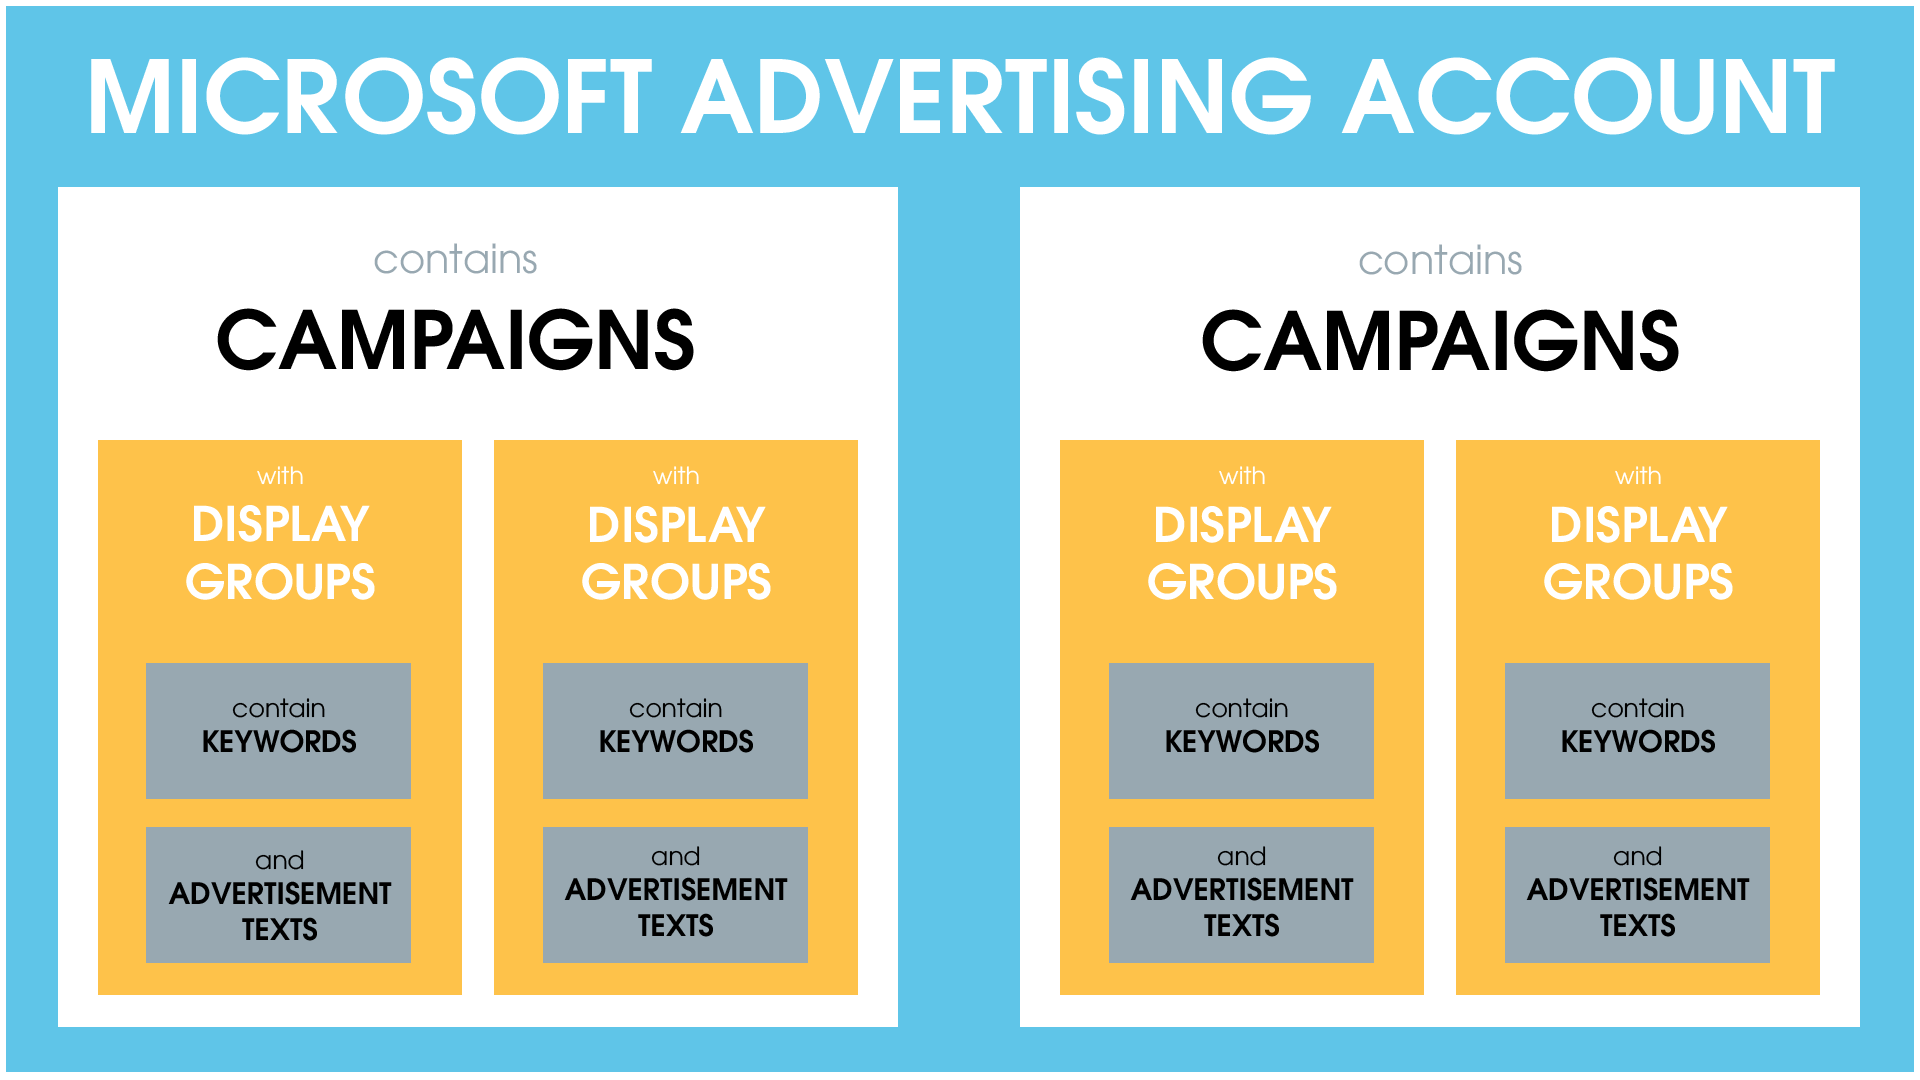 Estrutura da conta do Microsoft Advertising: a conta contém campanhas, que são o nível geral de todos os grupos de anúncios.  Os grupos de anúncios, por sua vez, contêm palavras-chave importantes e os textos de anúncios apropriados.